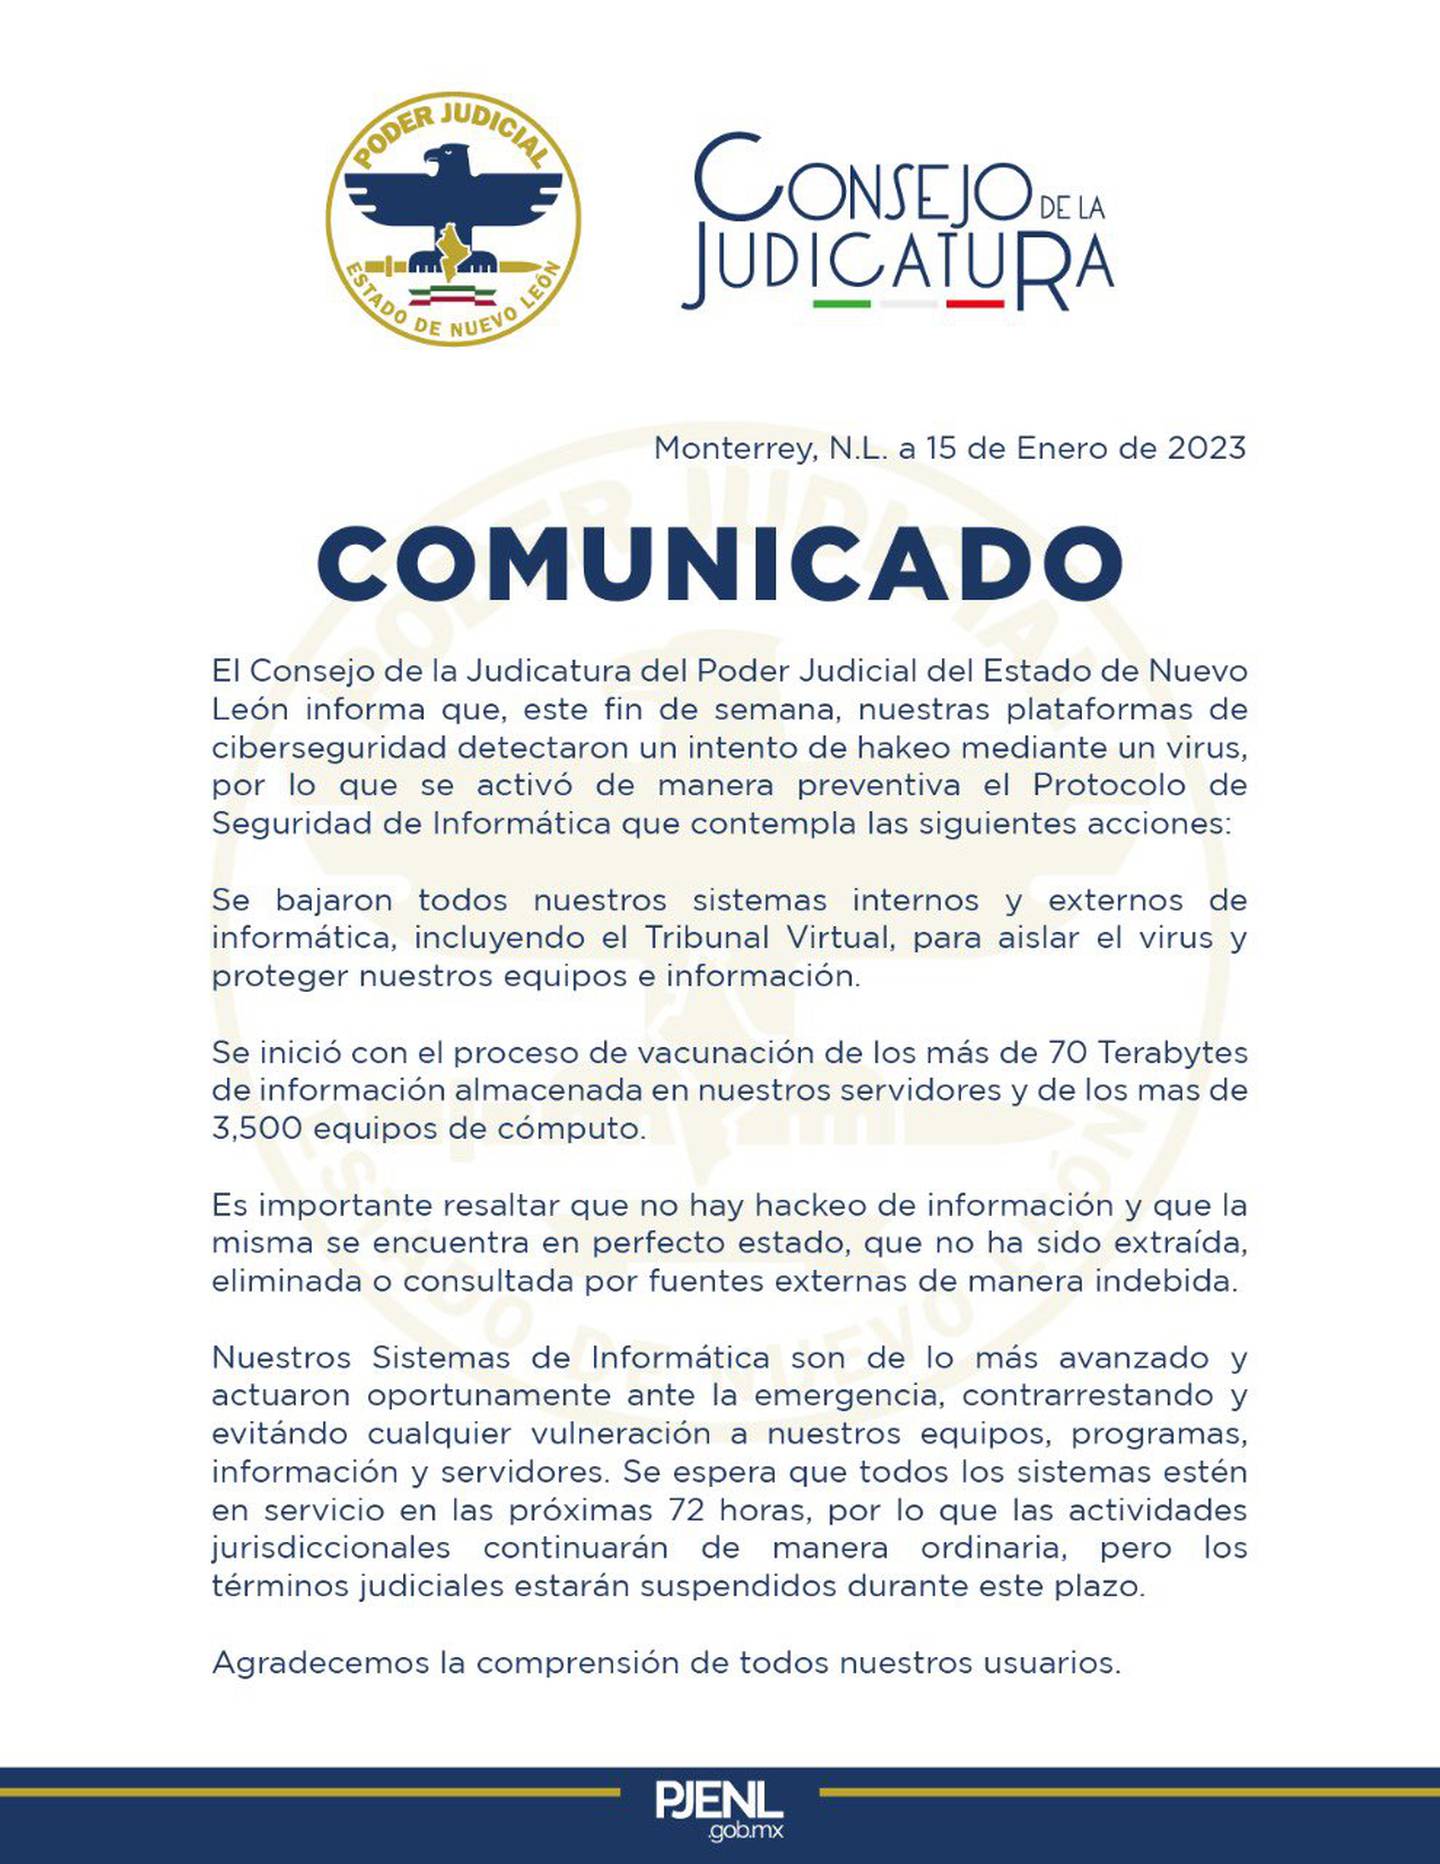 El Poder Judicial de Nuevo León emitió un comunicado para informar sobre el intento de hackeo.